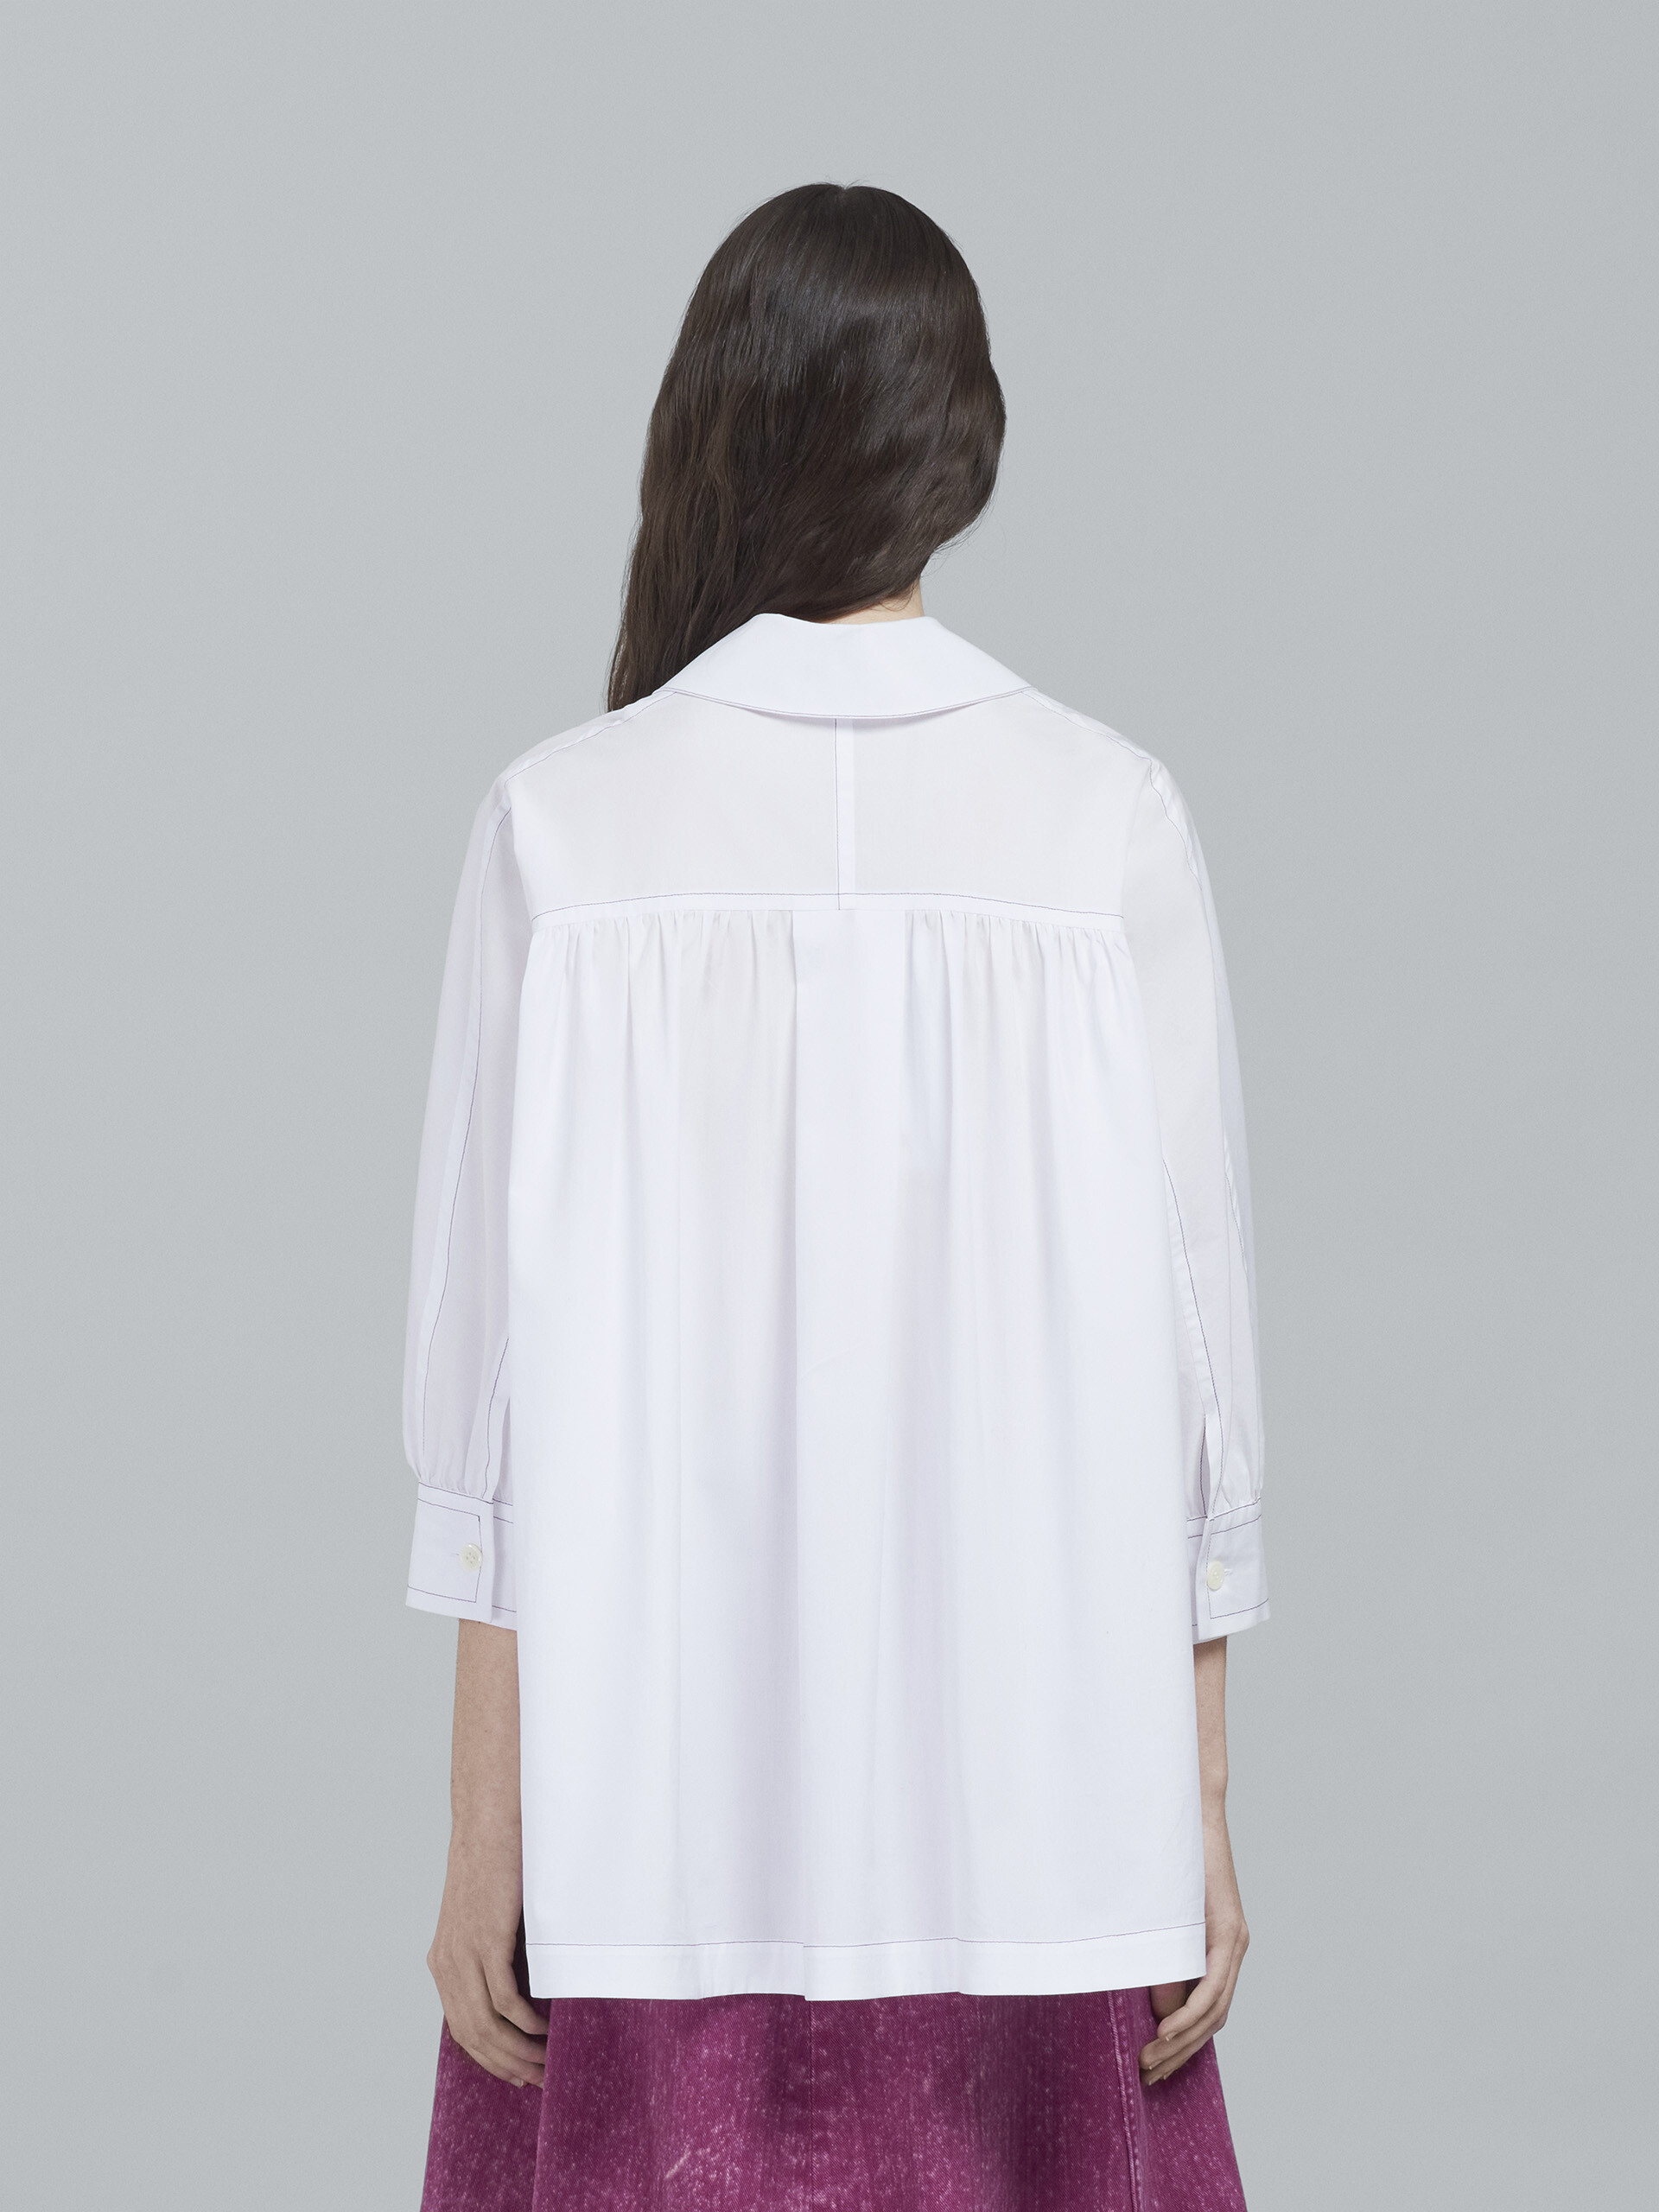 Hemd aus weißer Popeline - Hemden - Image 3